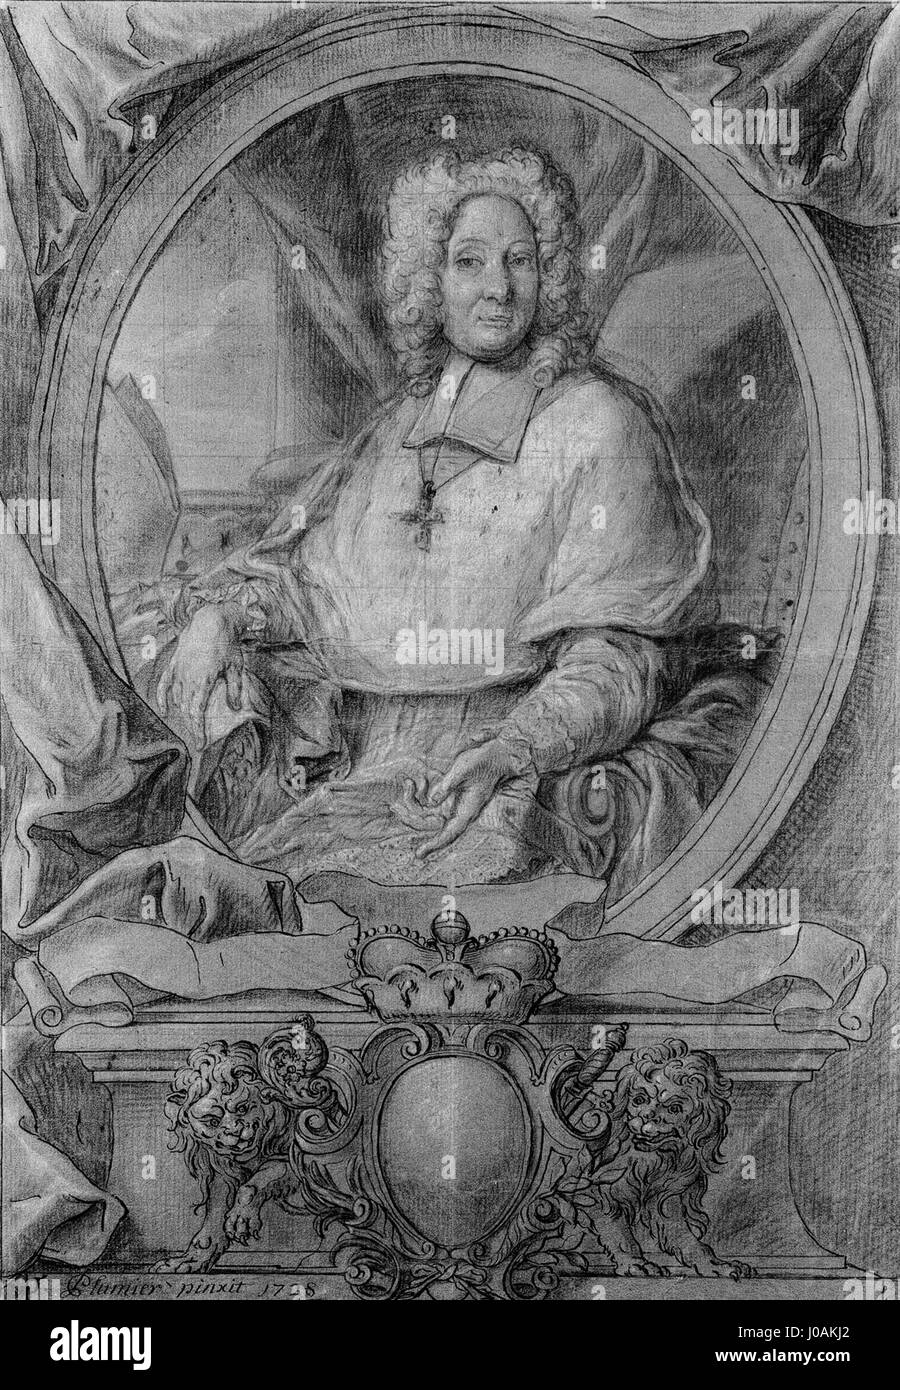 Emond Plumier, Georges Louis de Berghes, prince-évêque de Liège (1728), Cabinet des estampes et des dessins de la Ville de Liège Banque D'Images